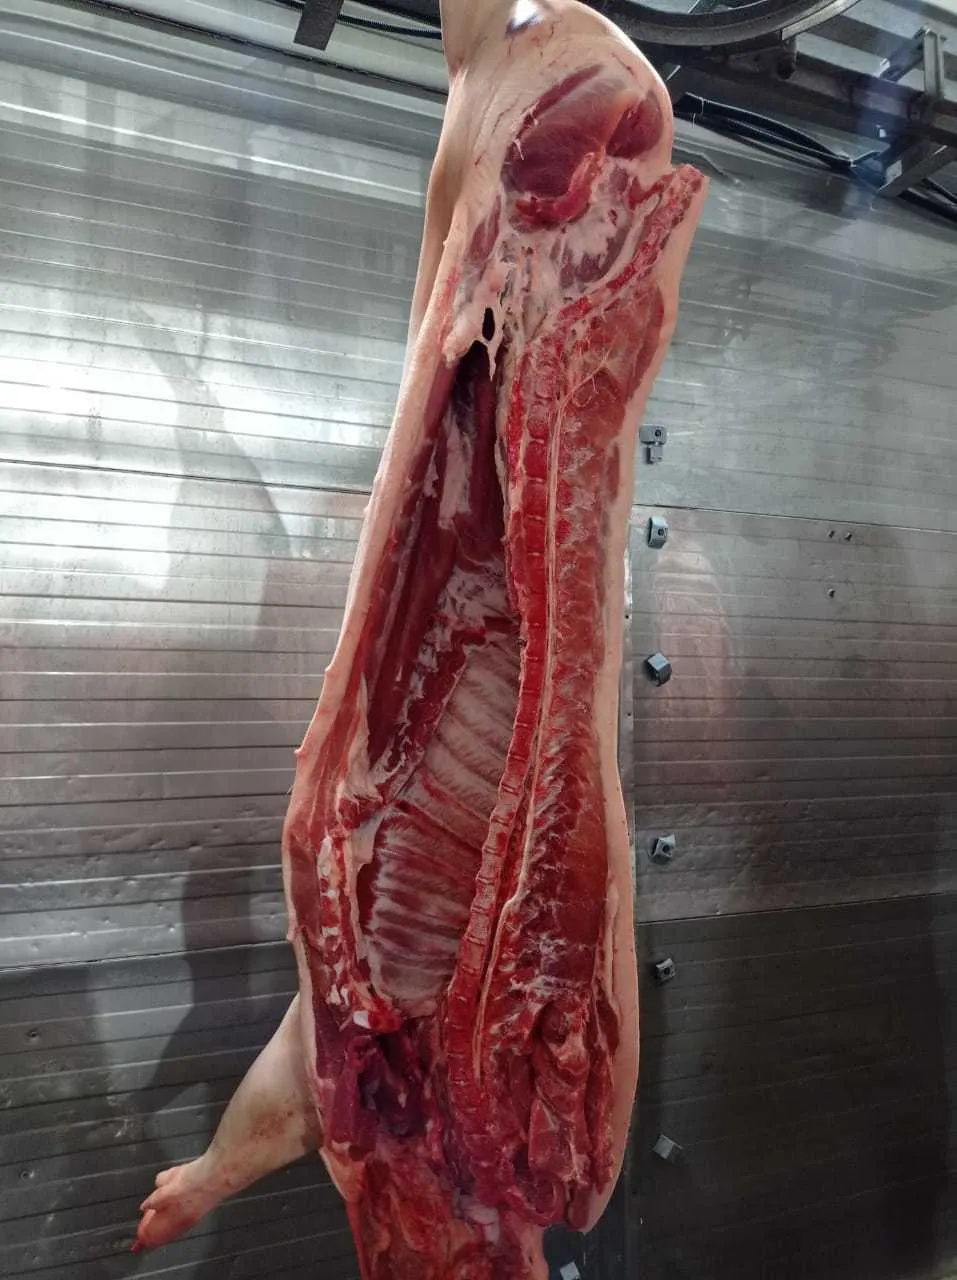  свинину охлажденную 194 руб. кг. в Владивостоке 4